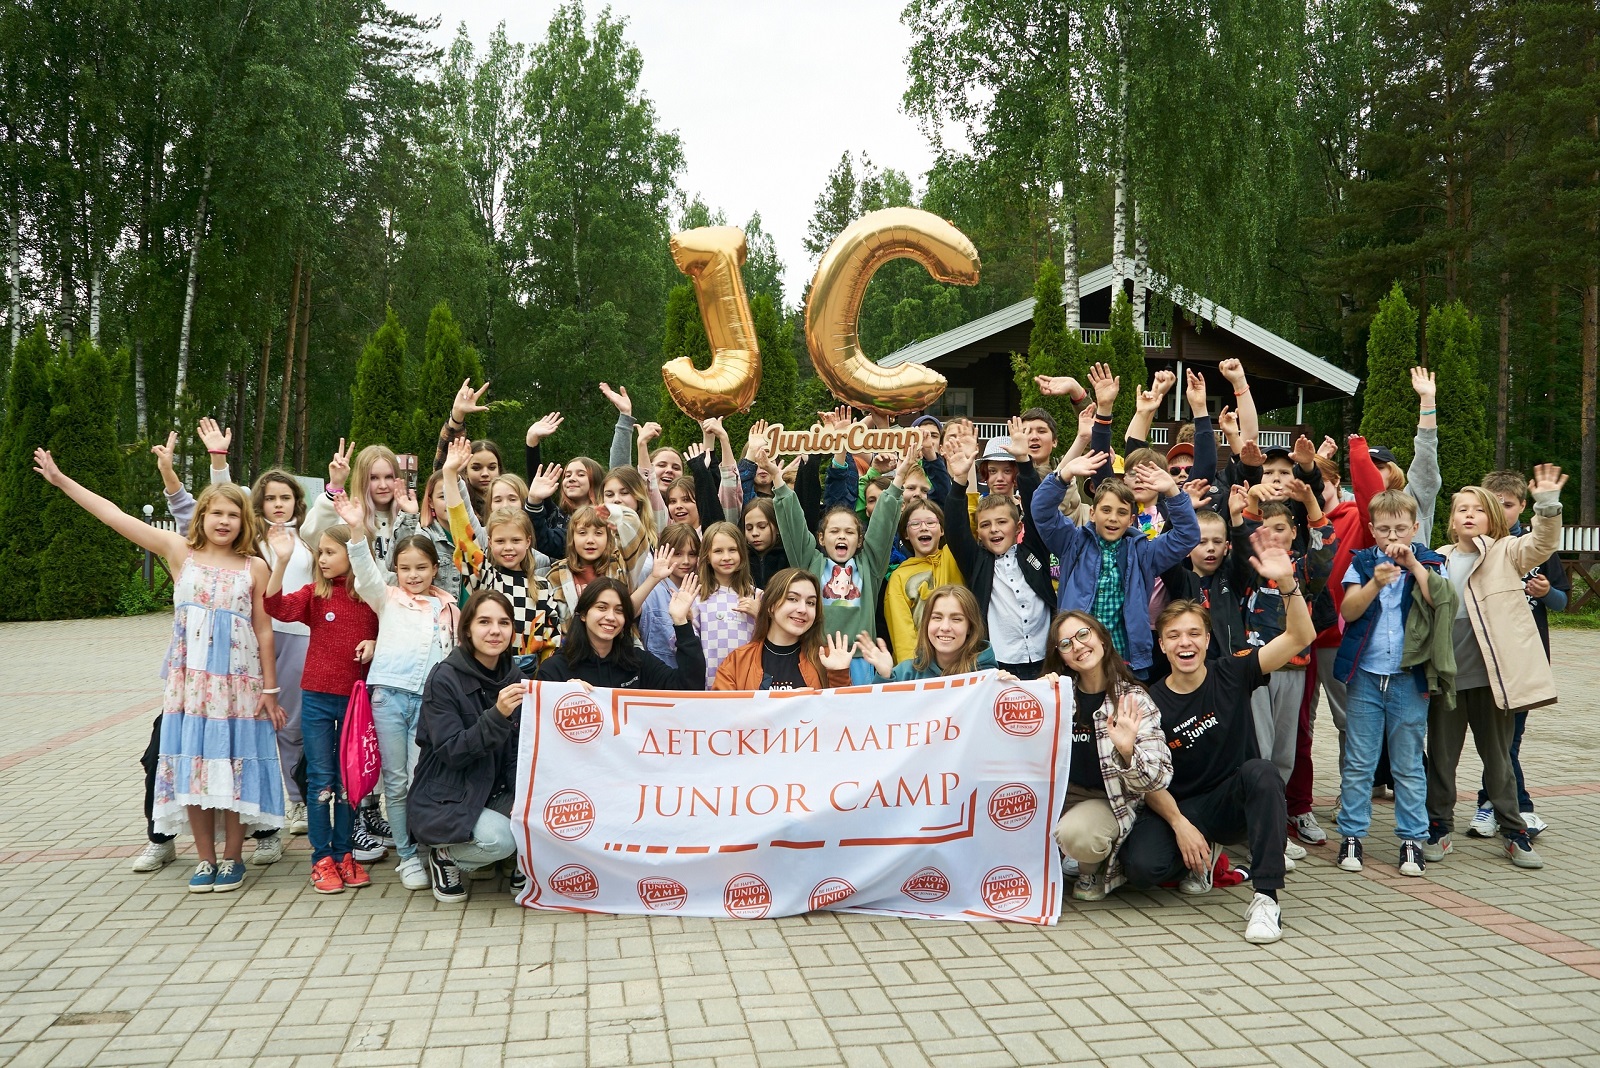 «Junior Camp. Кирочное Подворье», Ленинградская область, Выборгский район.